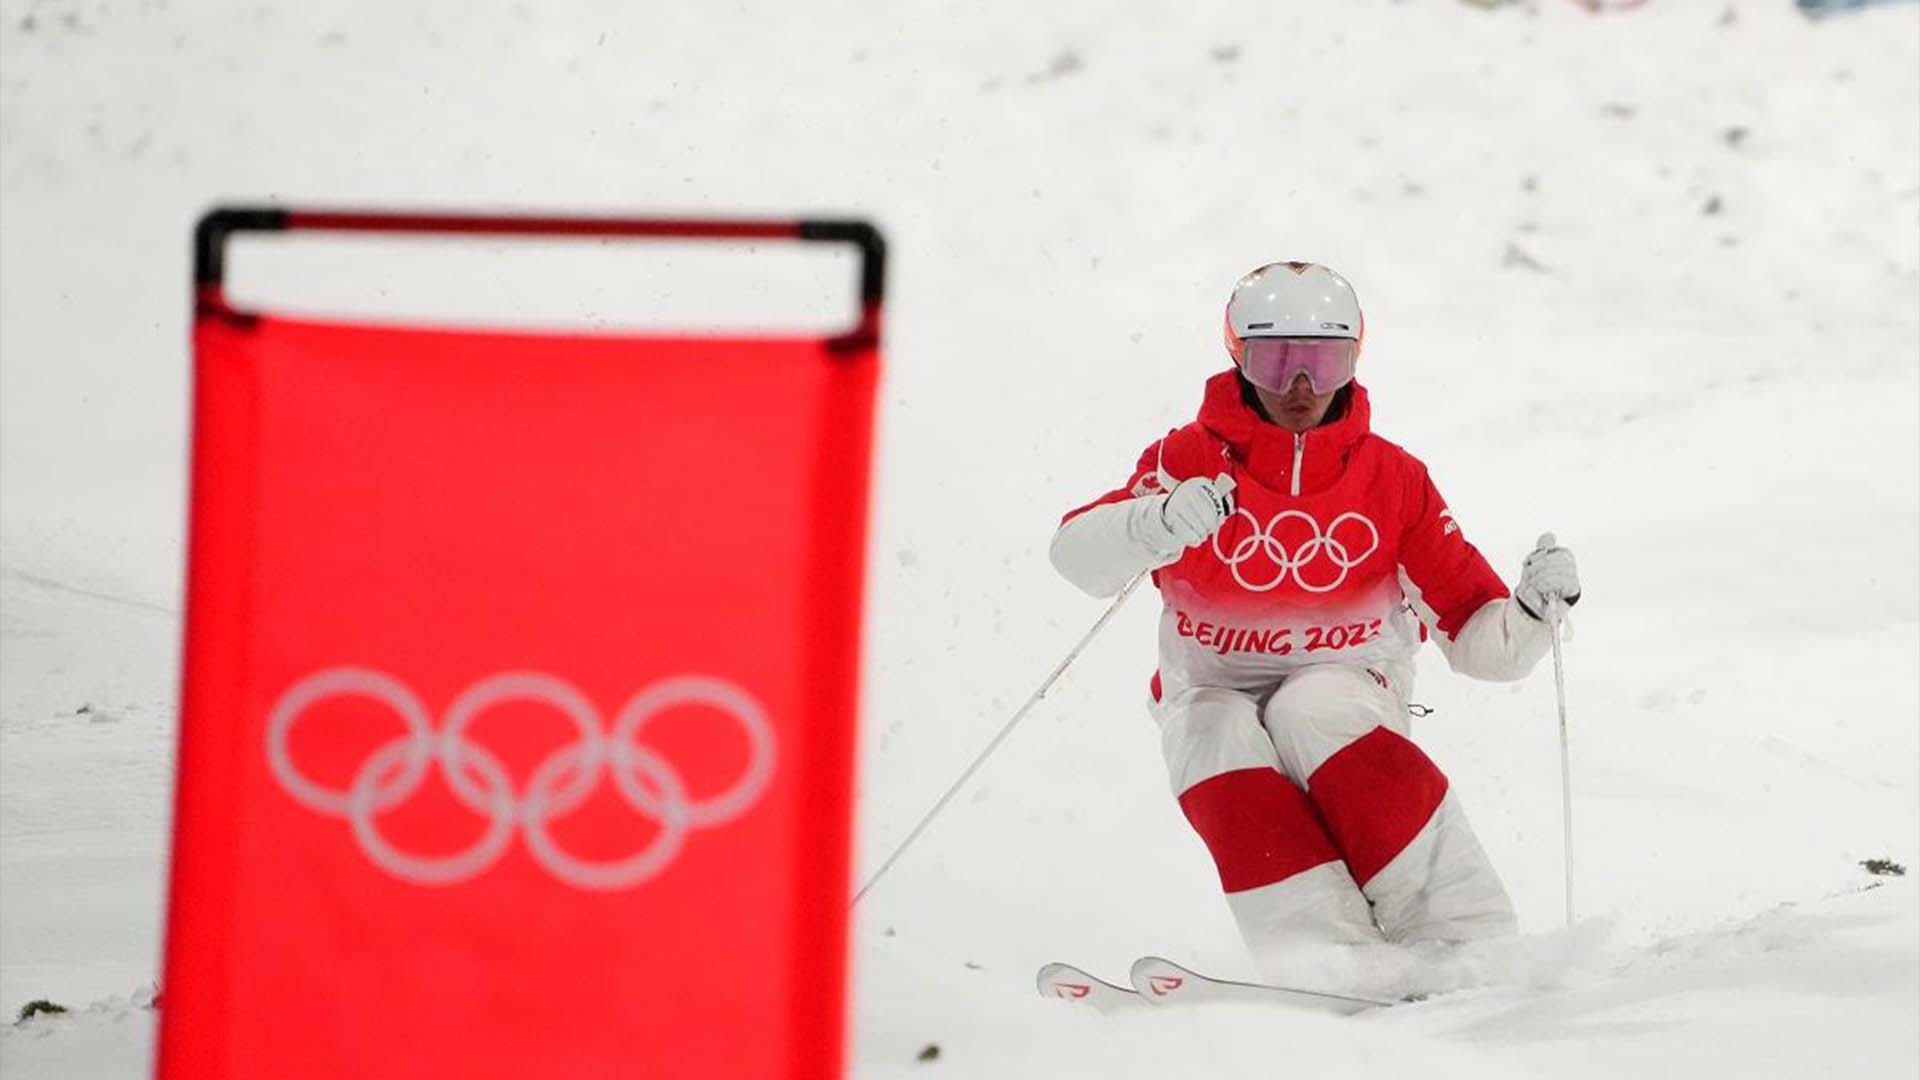 Le Canadien Mikael Kingsbury skie lors de la ronde de qualification masculine de bosses aux Jeux olympiques d'hiver de Pékin à Zhangjiakou, en Chine, le jeudi 3 février 2022